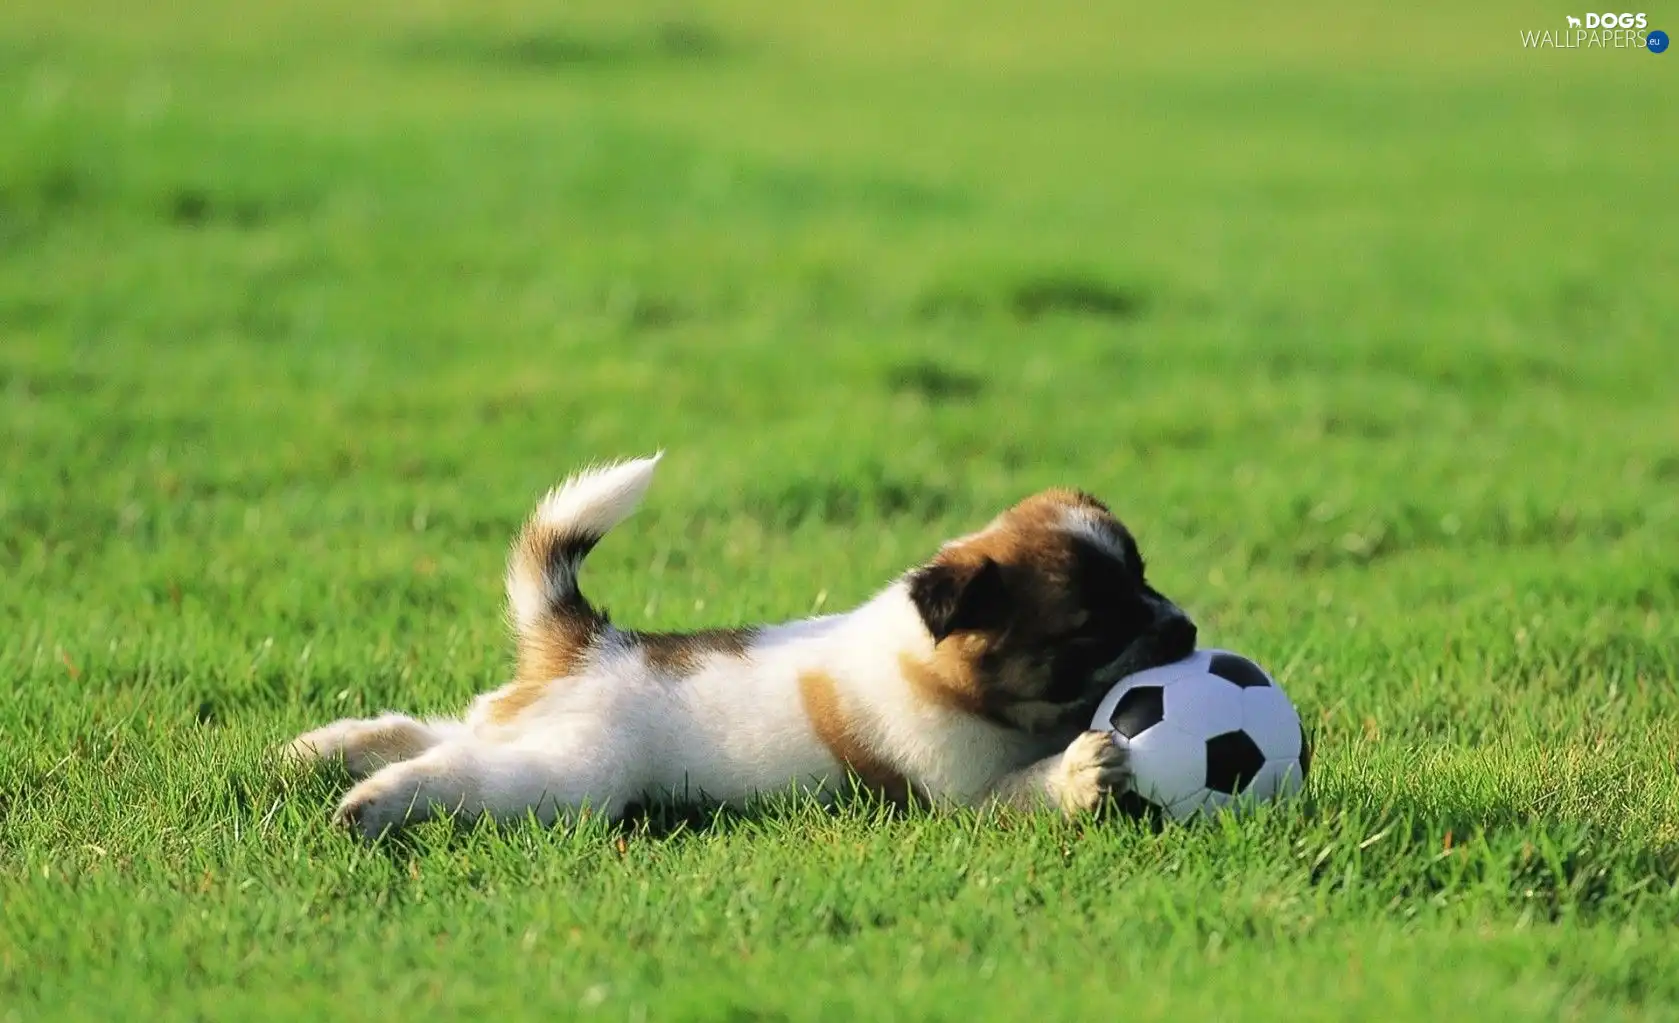 Ball, dog